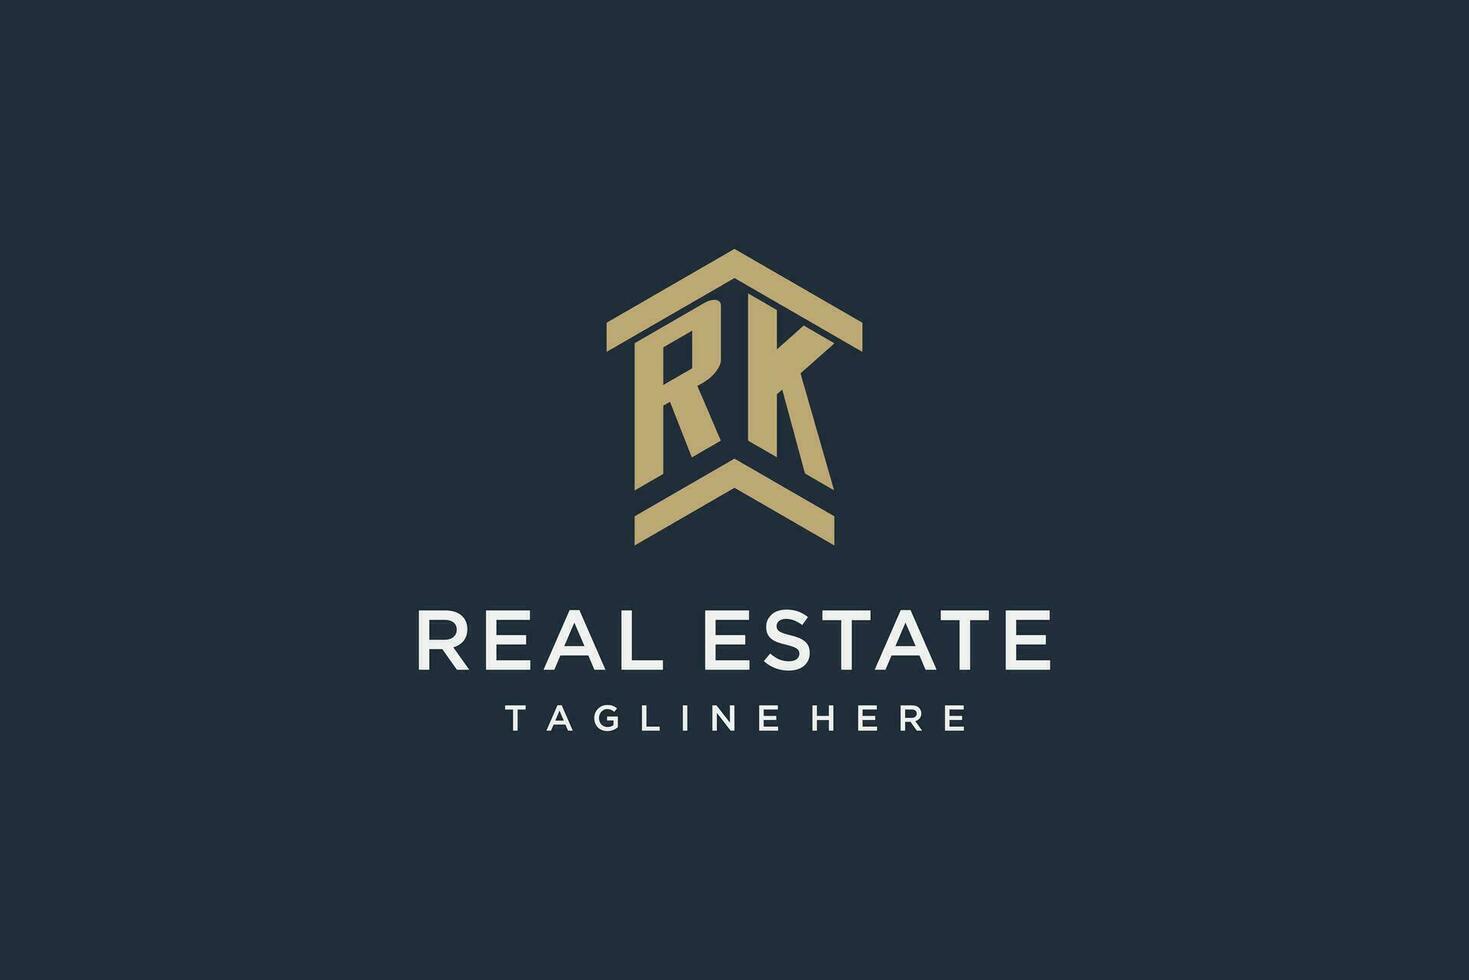 eerste rk logo voor echt landgoed met gemakkelijk en creatief huis dak icoon logo ontwerp ideeën vector